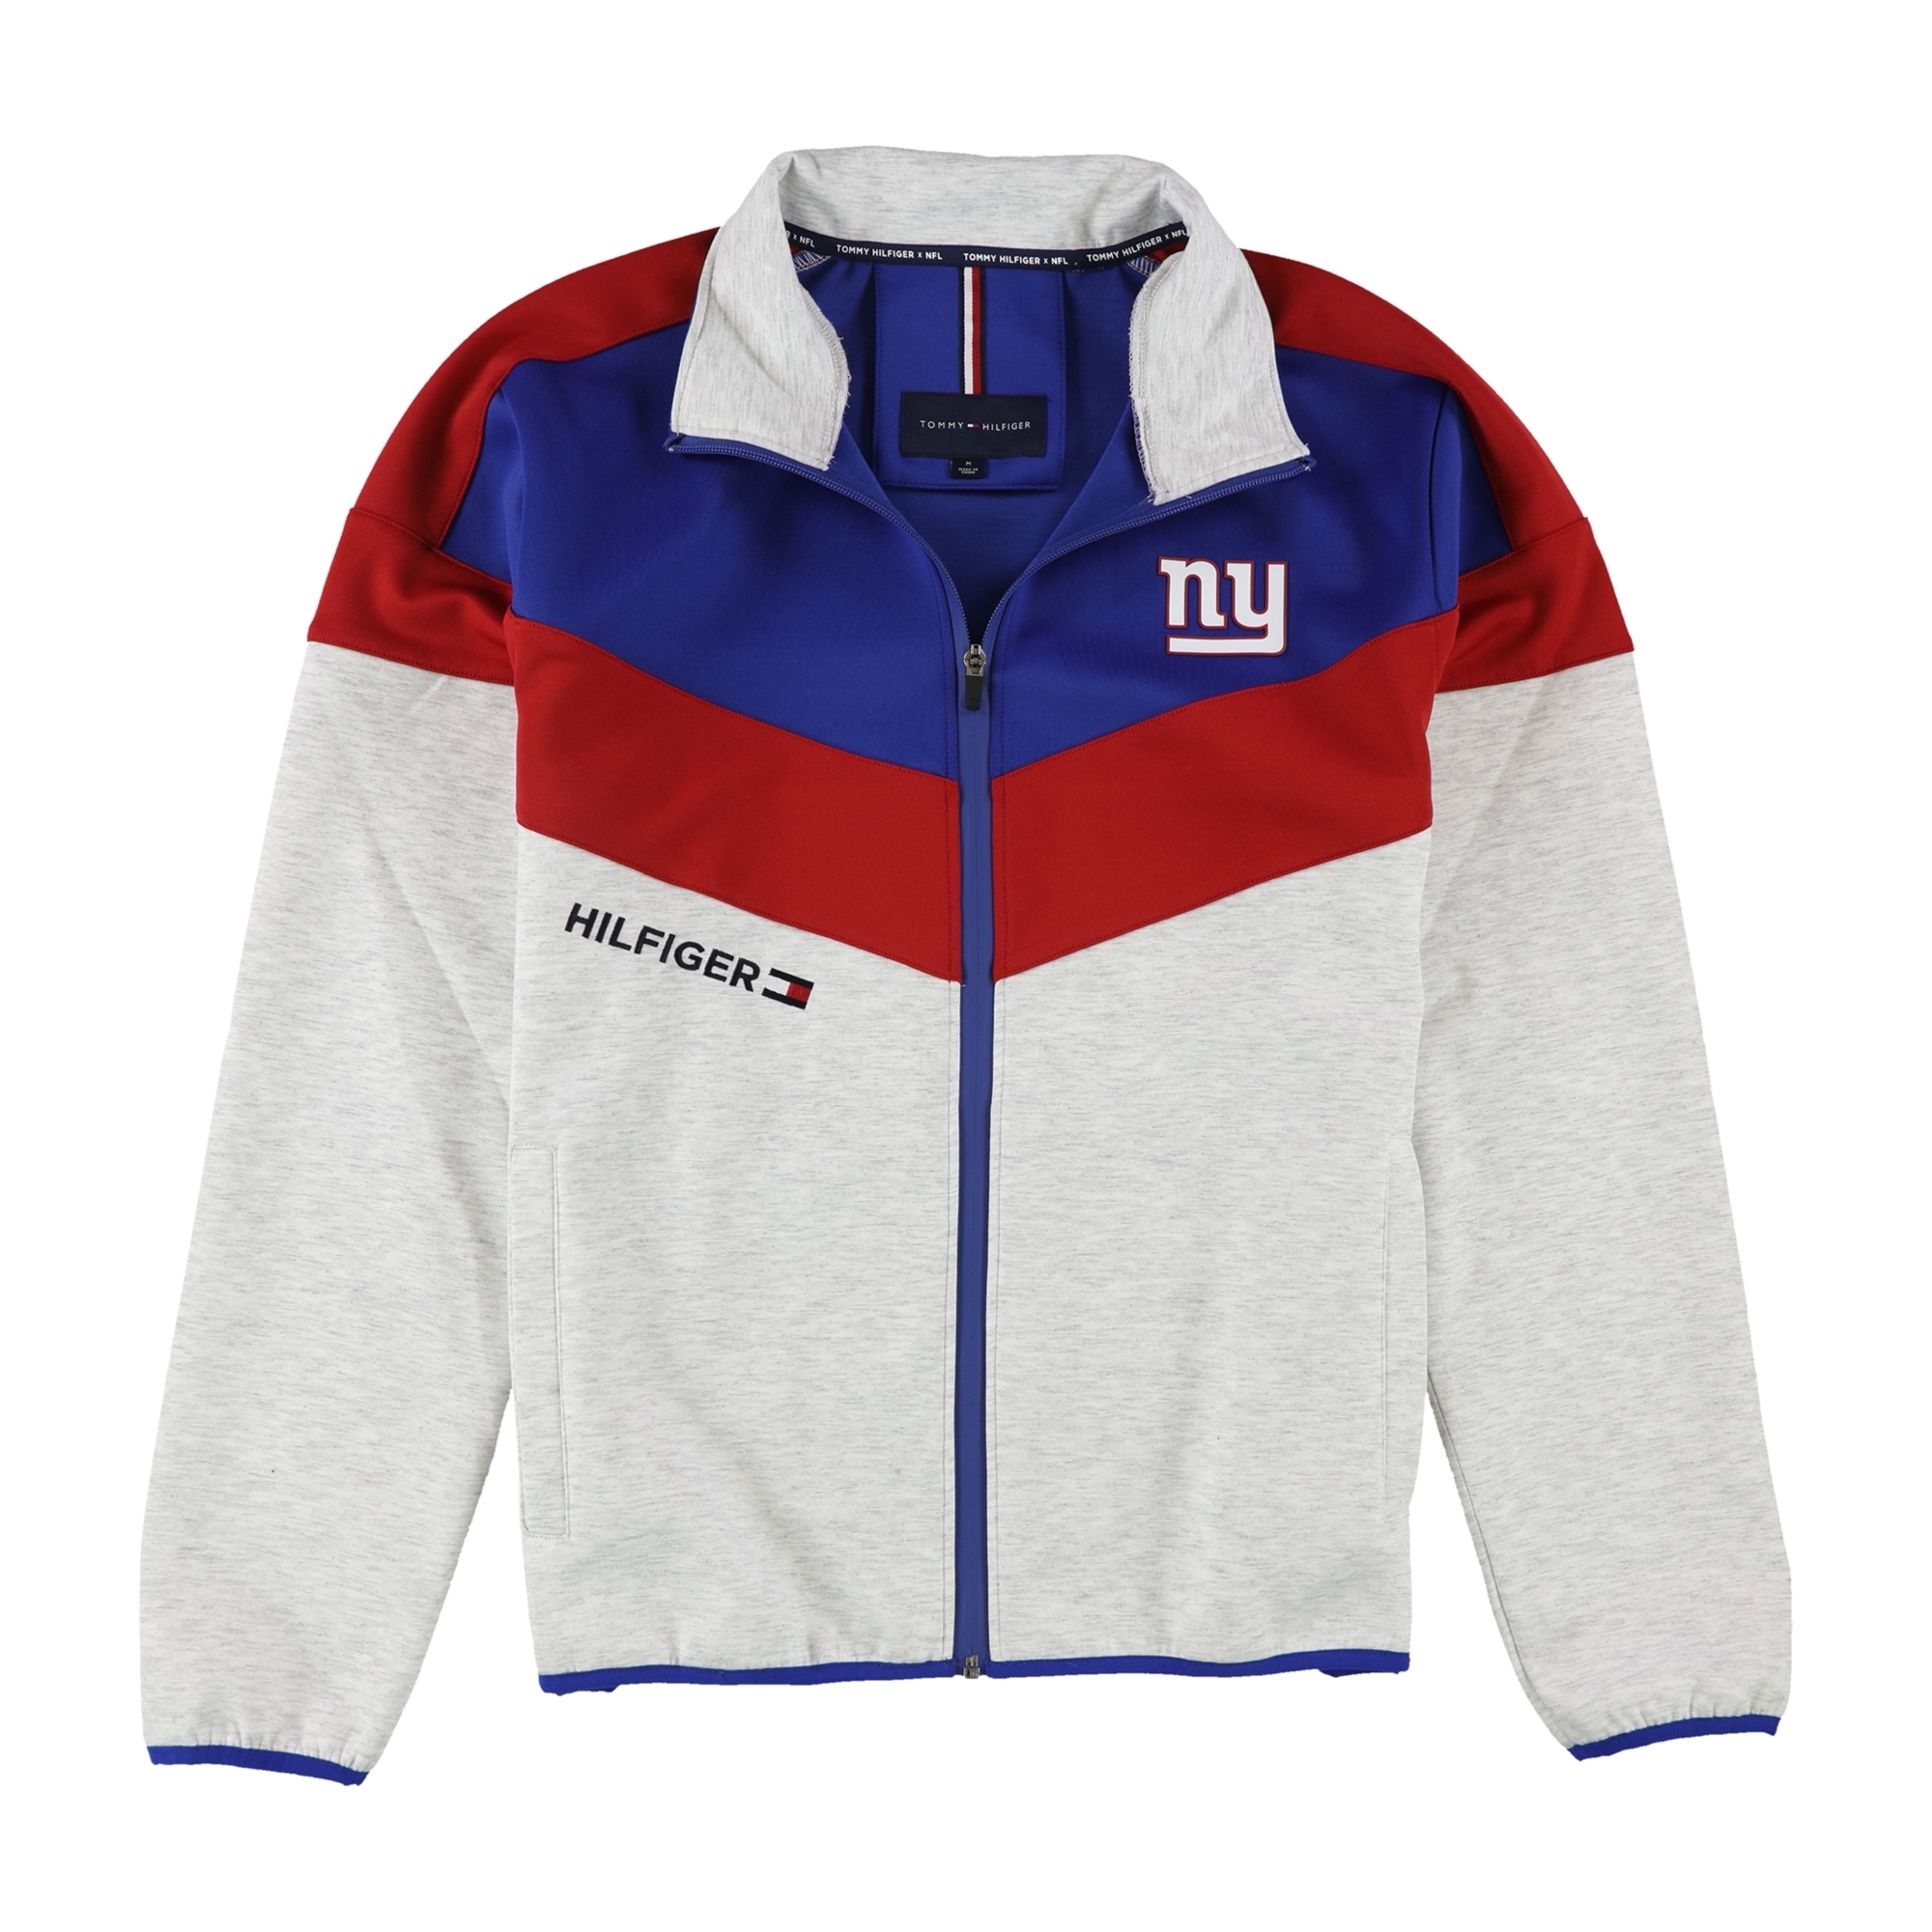 sagsøger flugt dump Buy a Mens Tommy Hilfiger New York Giants Track Jacket Sweatshirt Online |  TagsWeekly.com